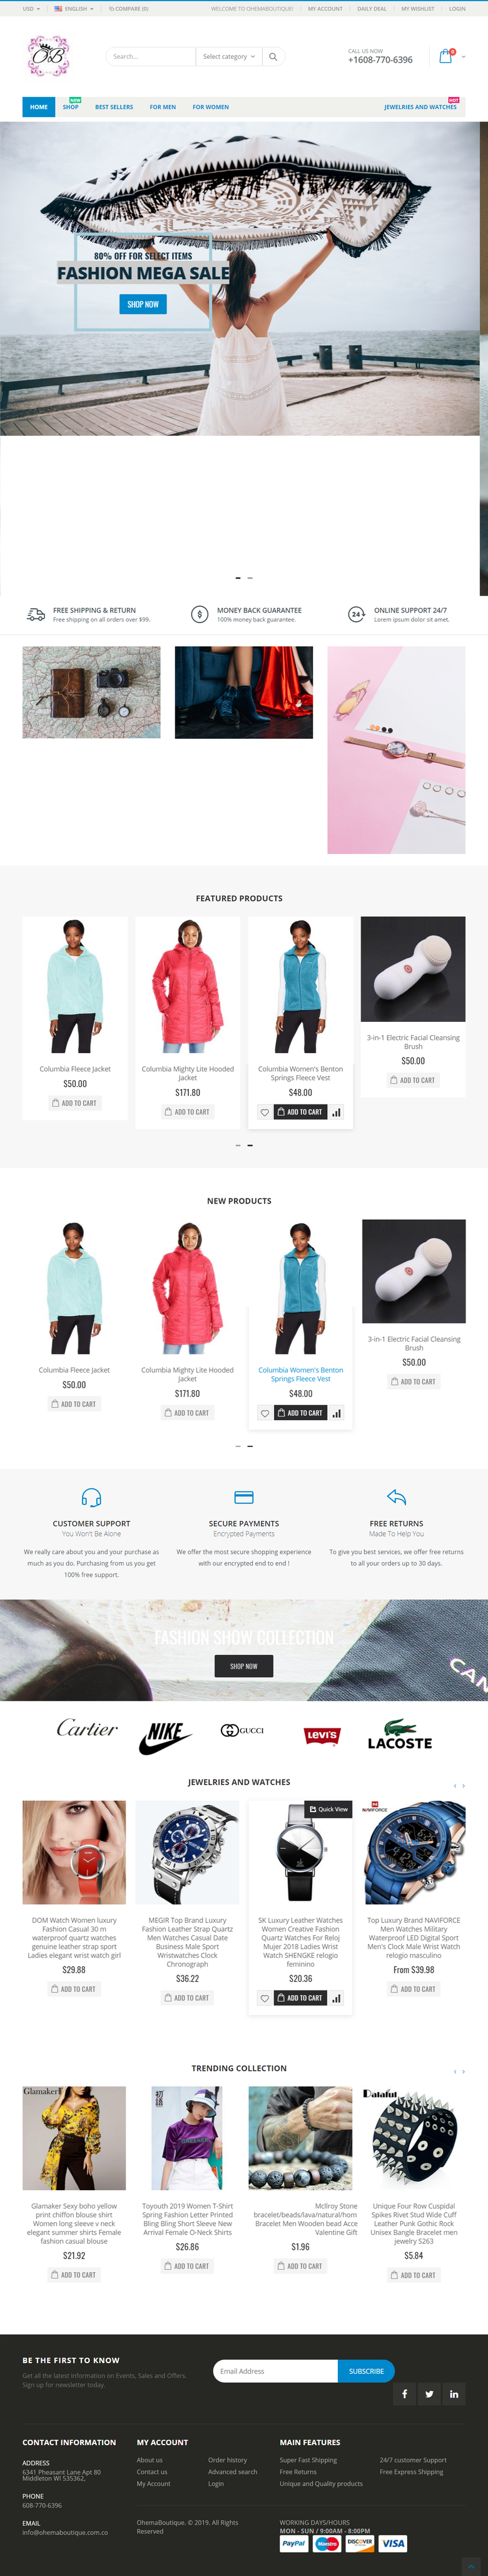 Shopify theme/ Web design